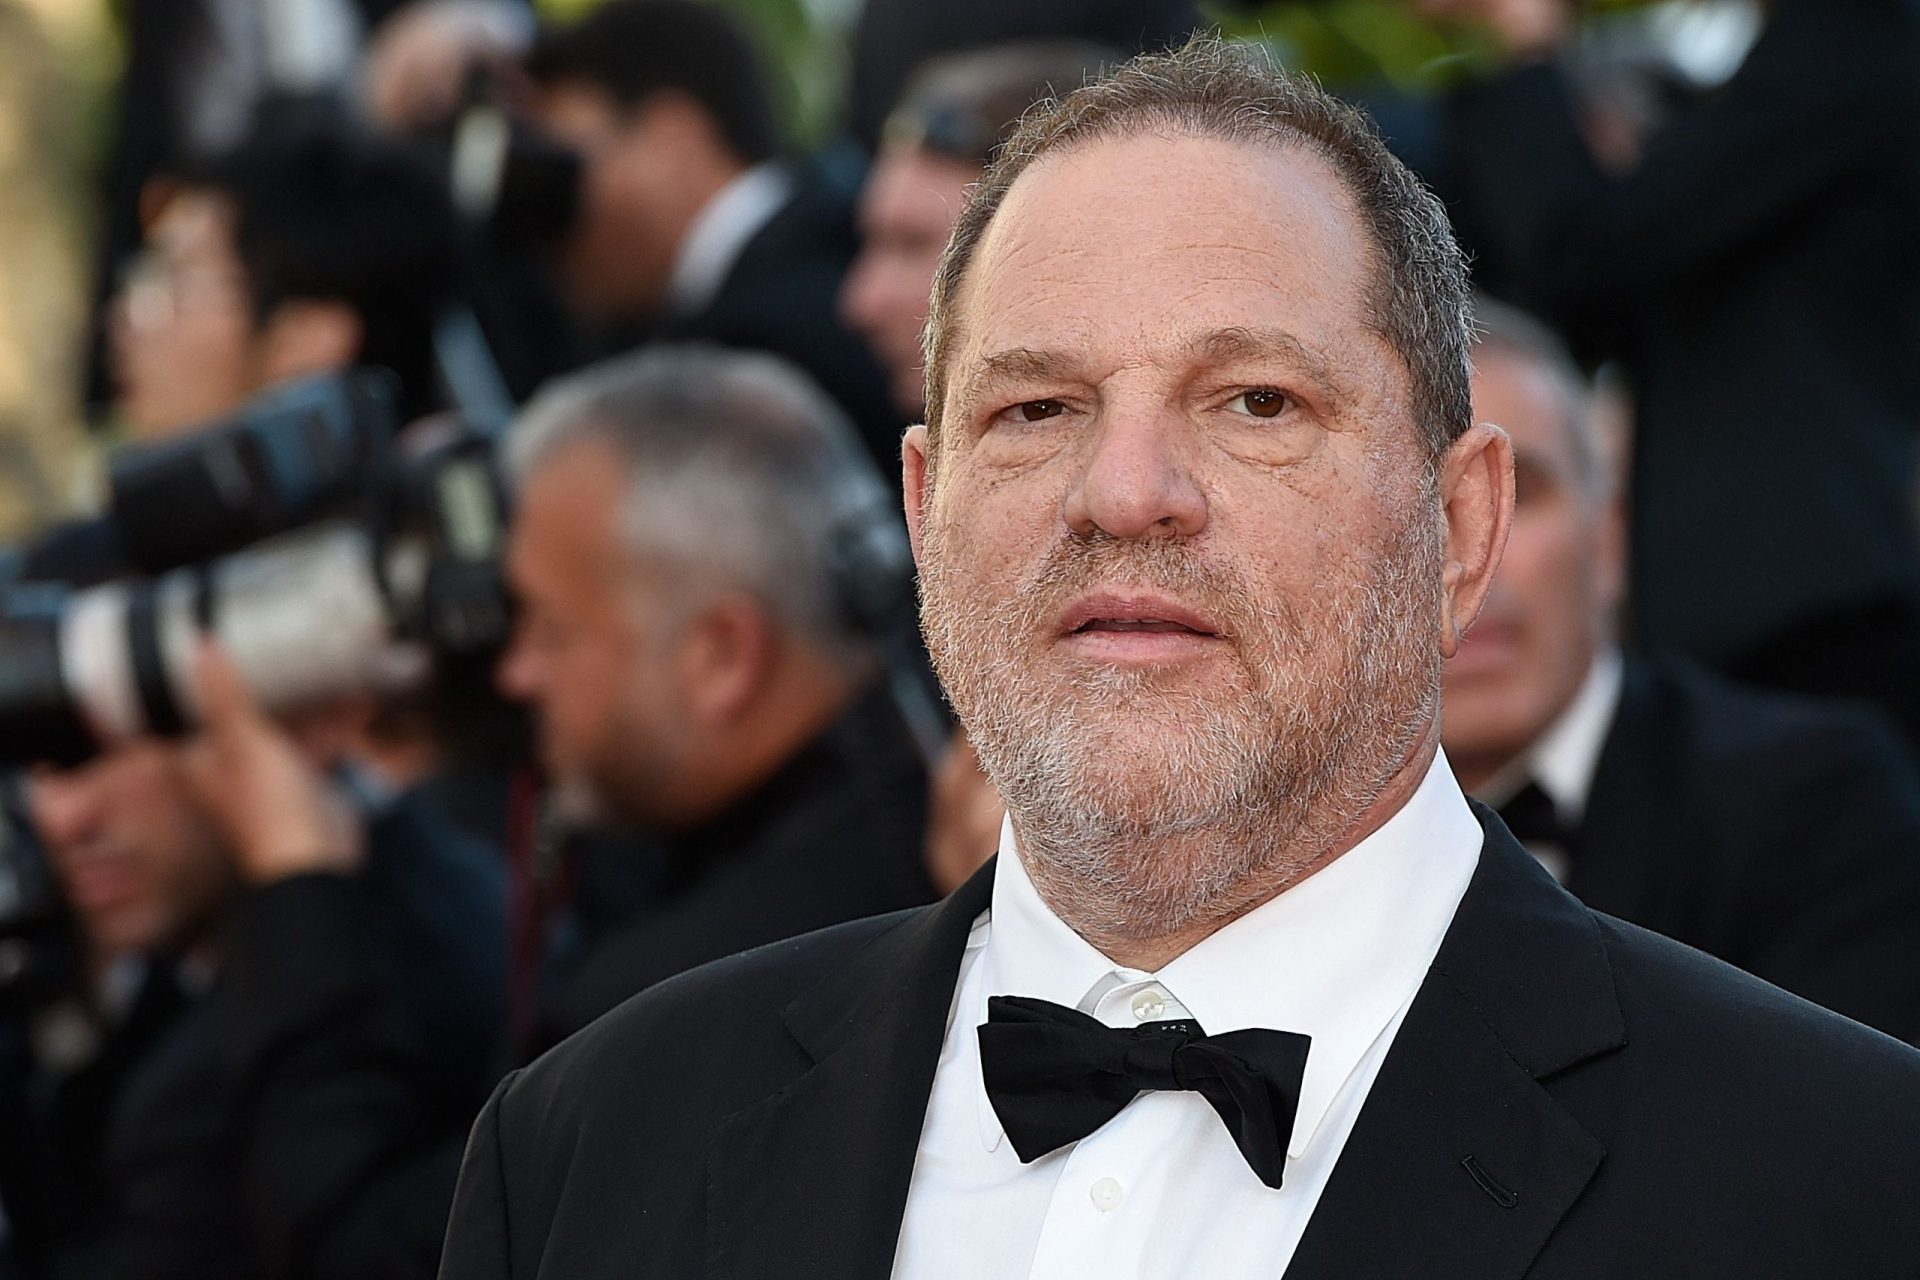 Jovem menor de idade terá sido mais uma das vítimas de Harvey Weinstein